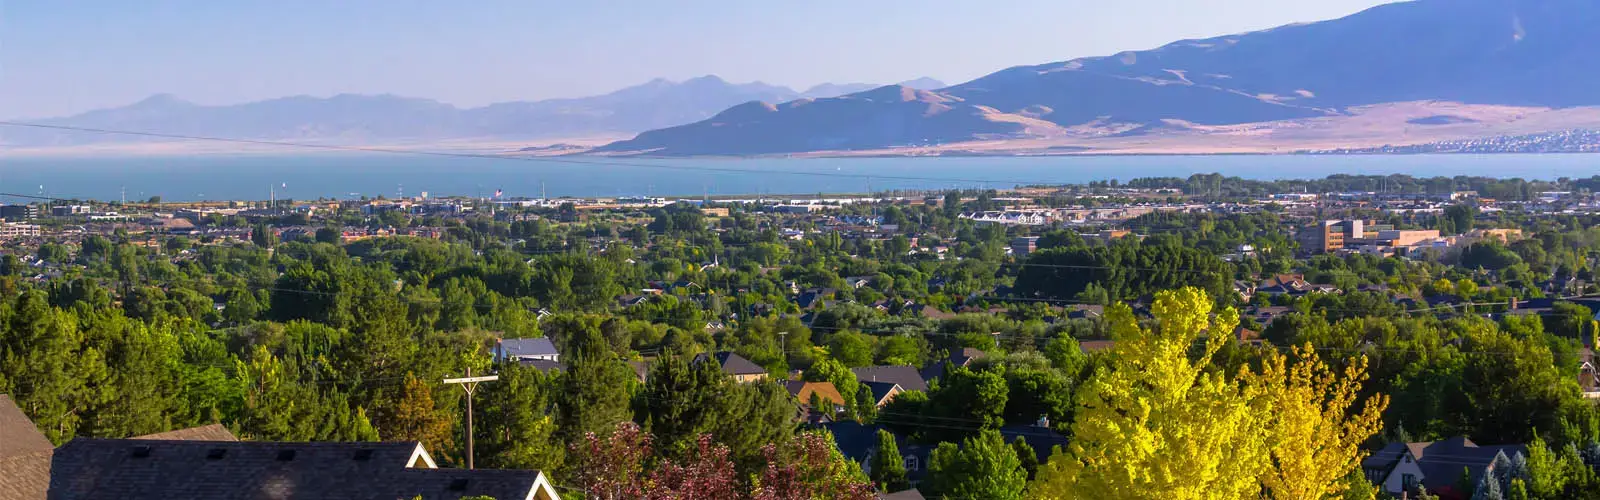 Orem Utah Landscape